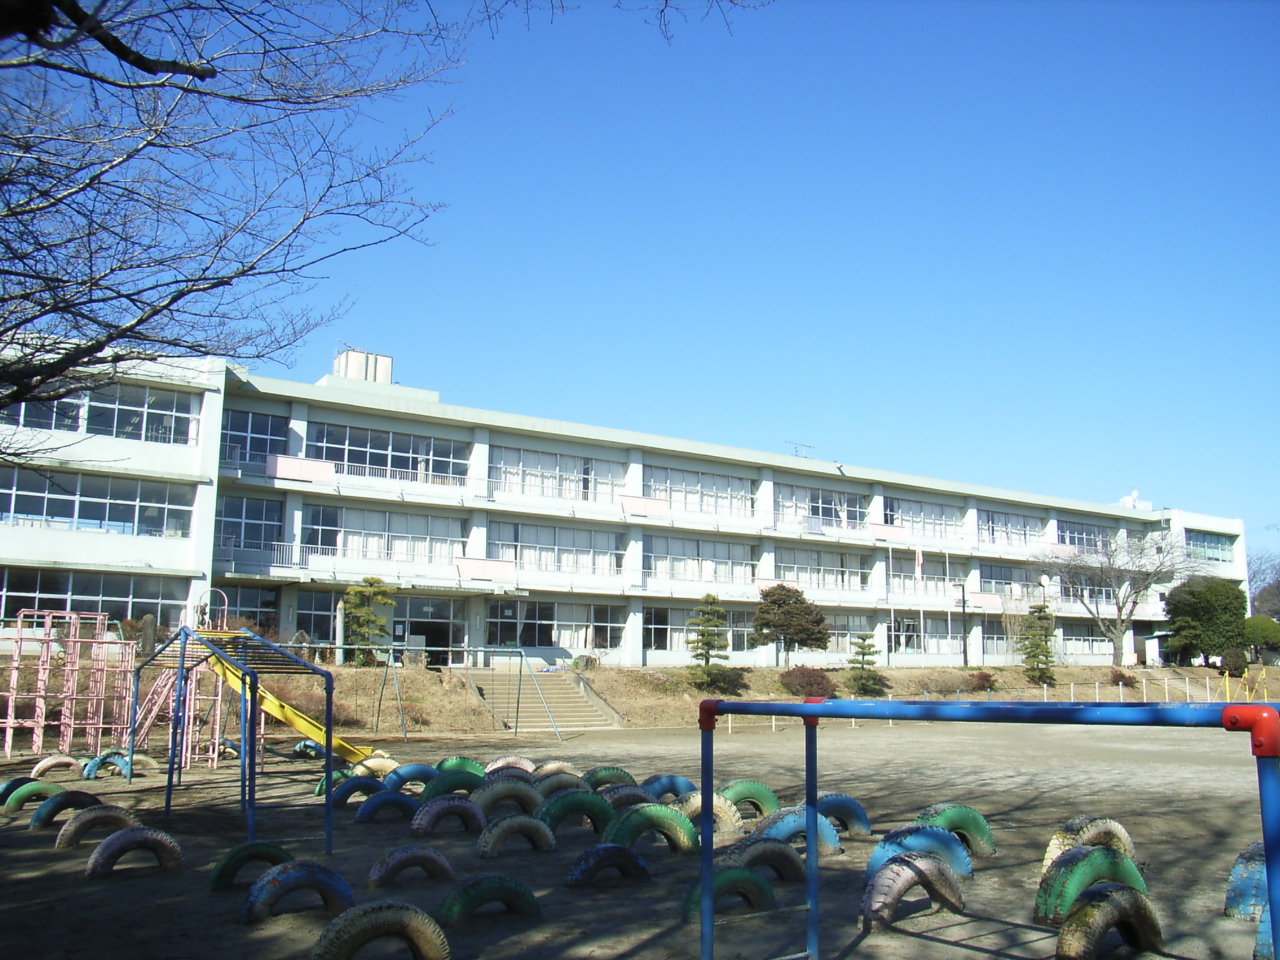 Primary school. Nephew ball Municipal Ogawa 600m up to elementary school (elementary school)